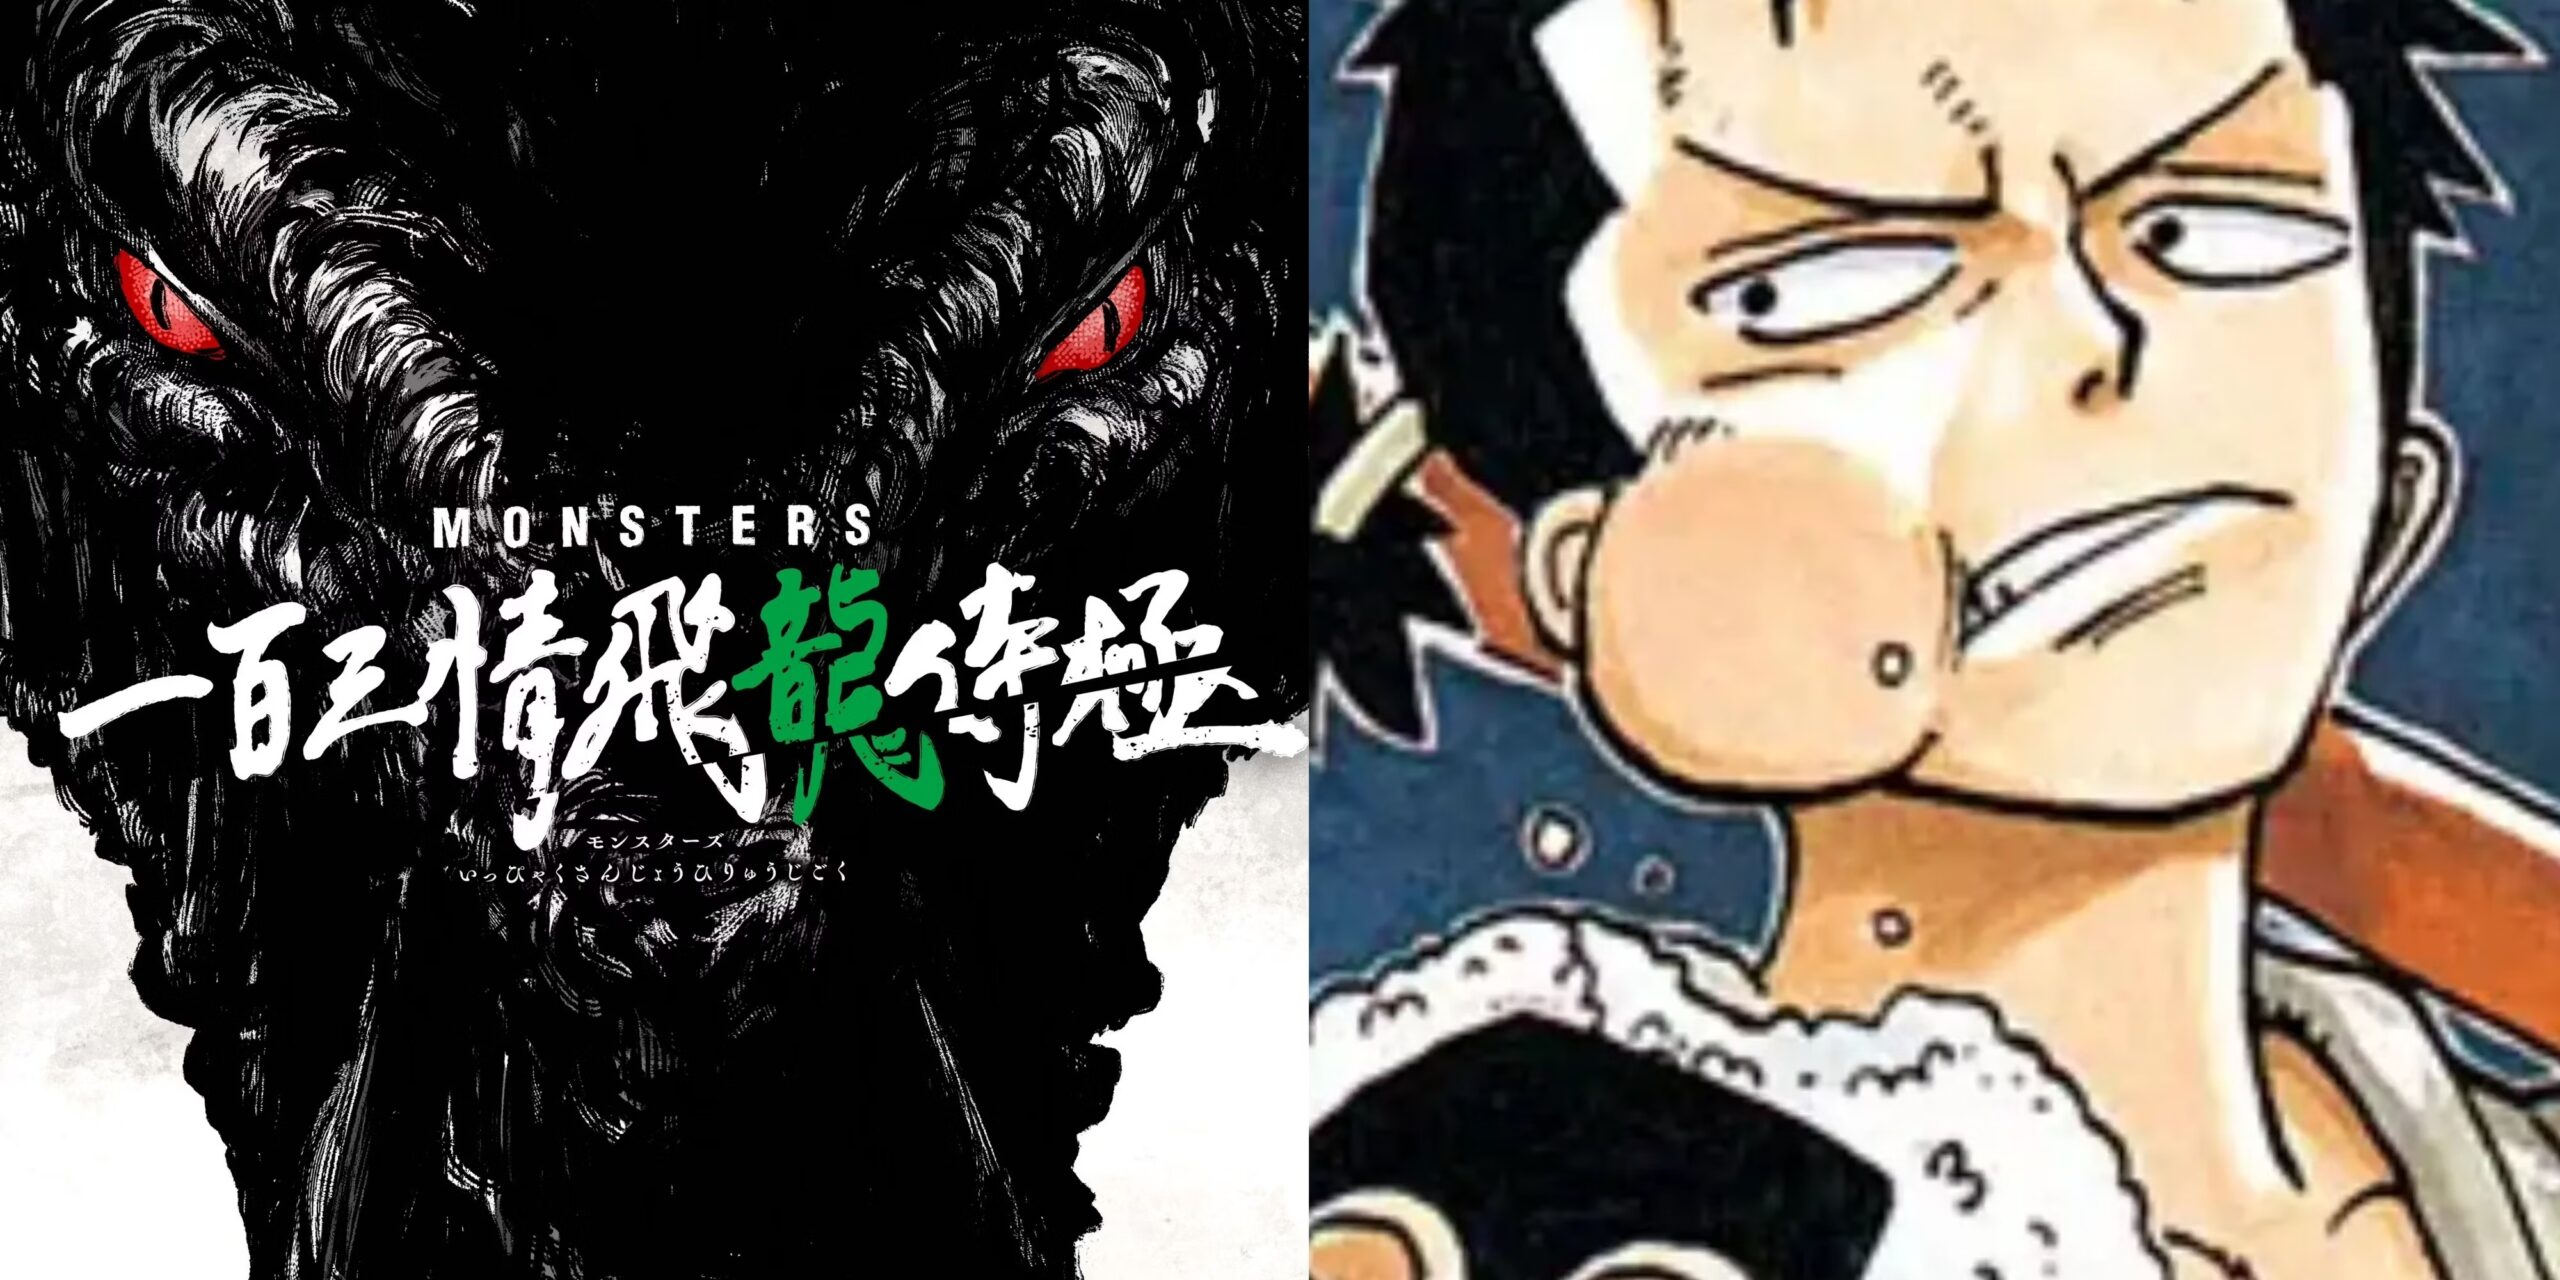 Monsters: condivisi degli sketch inediti di Eiichiro Oda, autore di One Piece